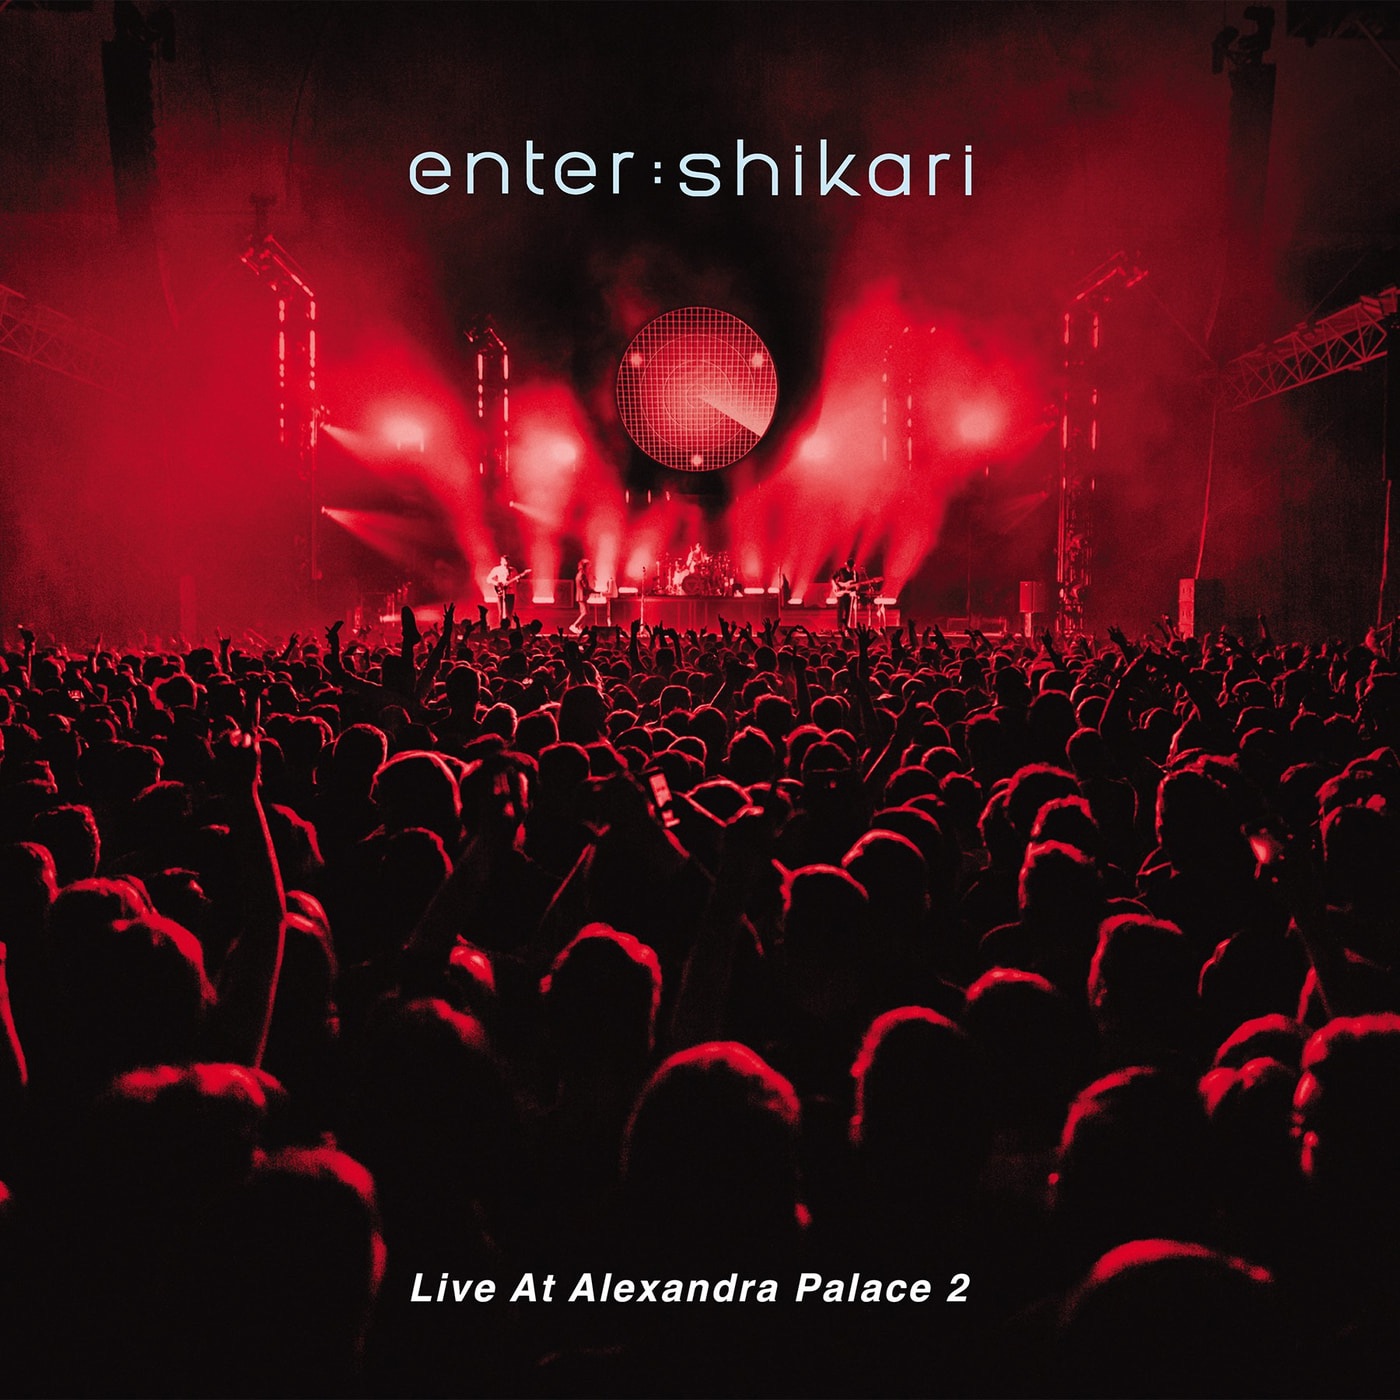 Live At Alexandra Palace 2 by Enter Shikari